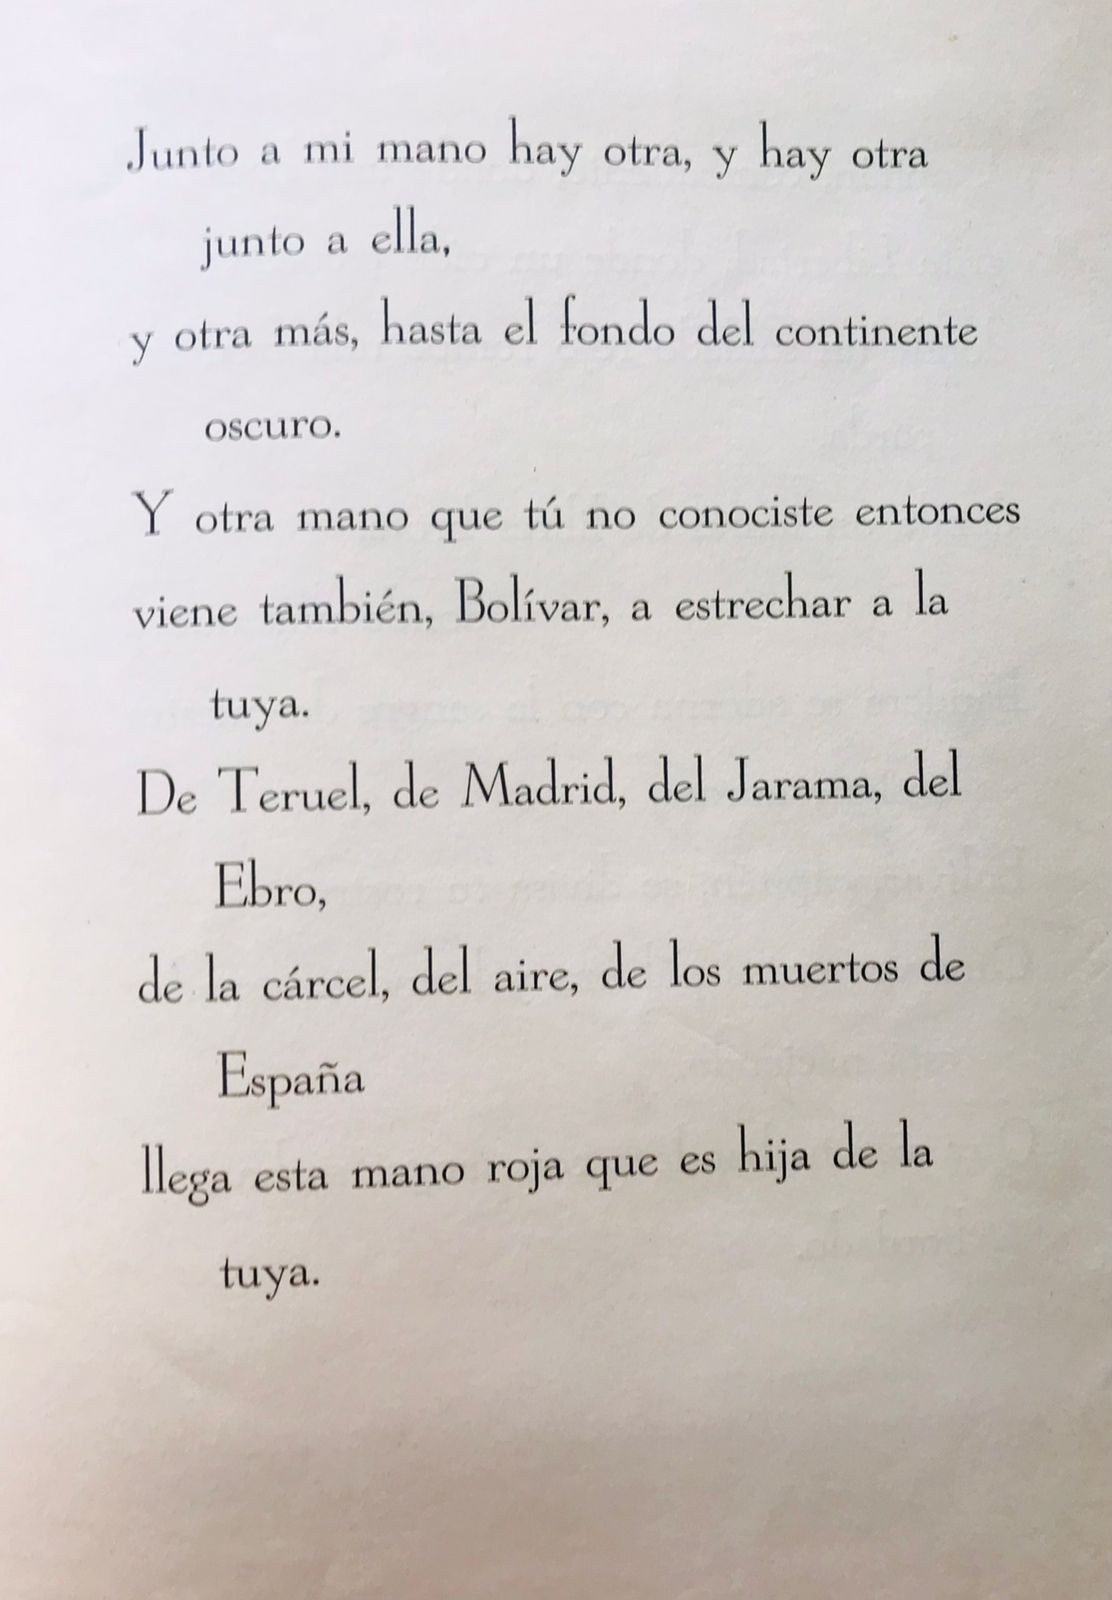 Pablo Neruda	Un canto para Bolivar